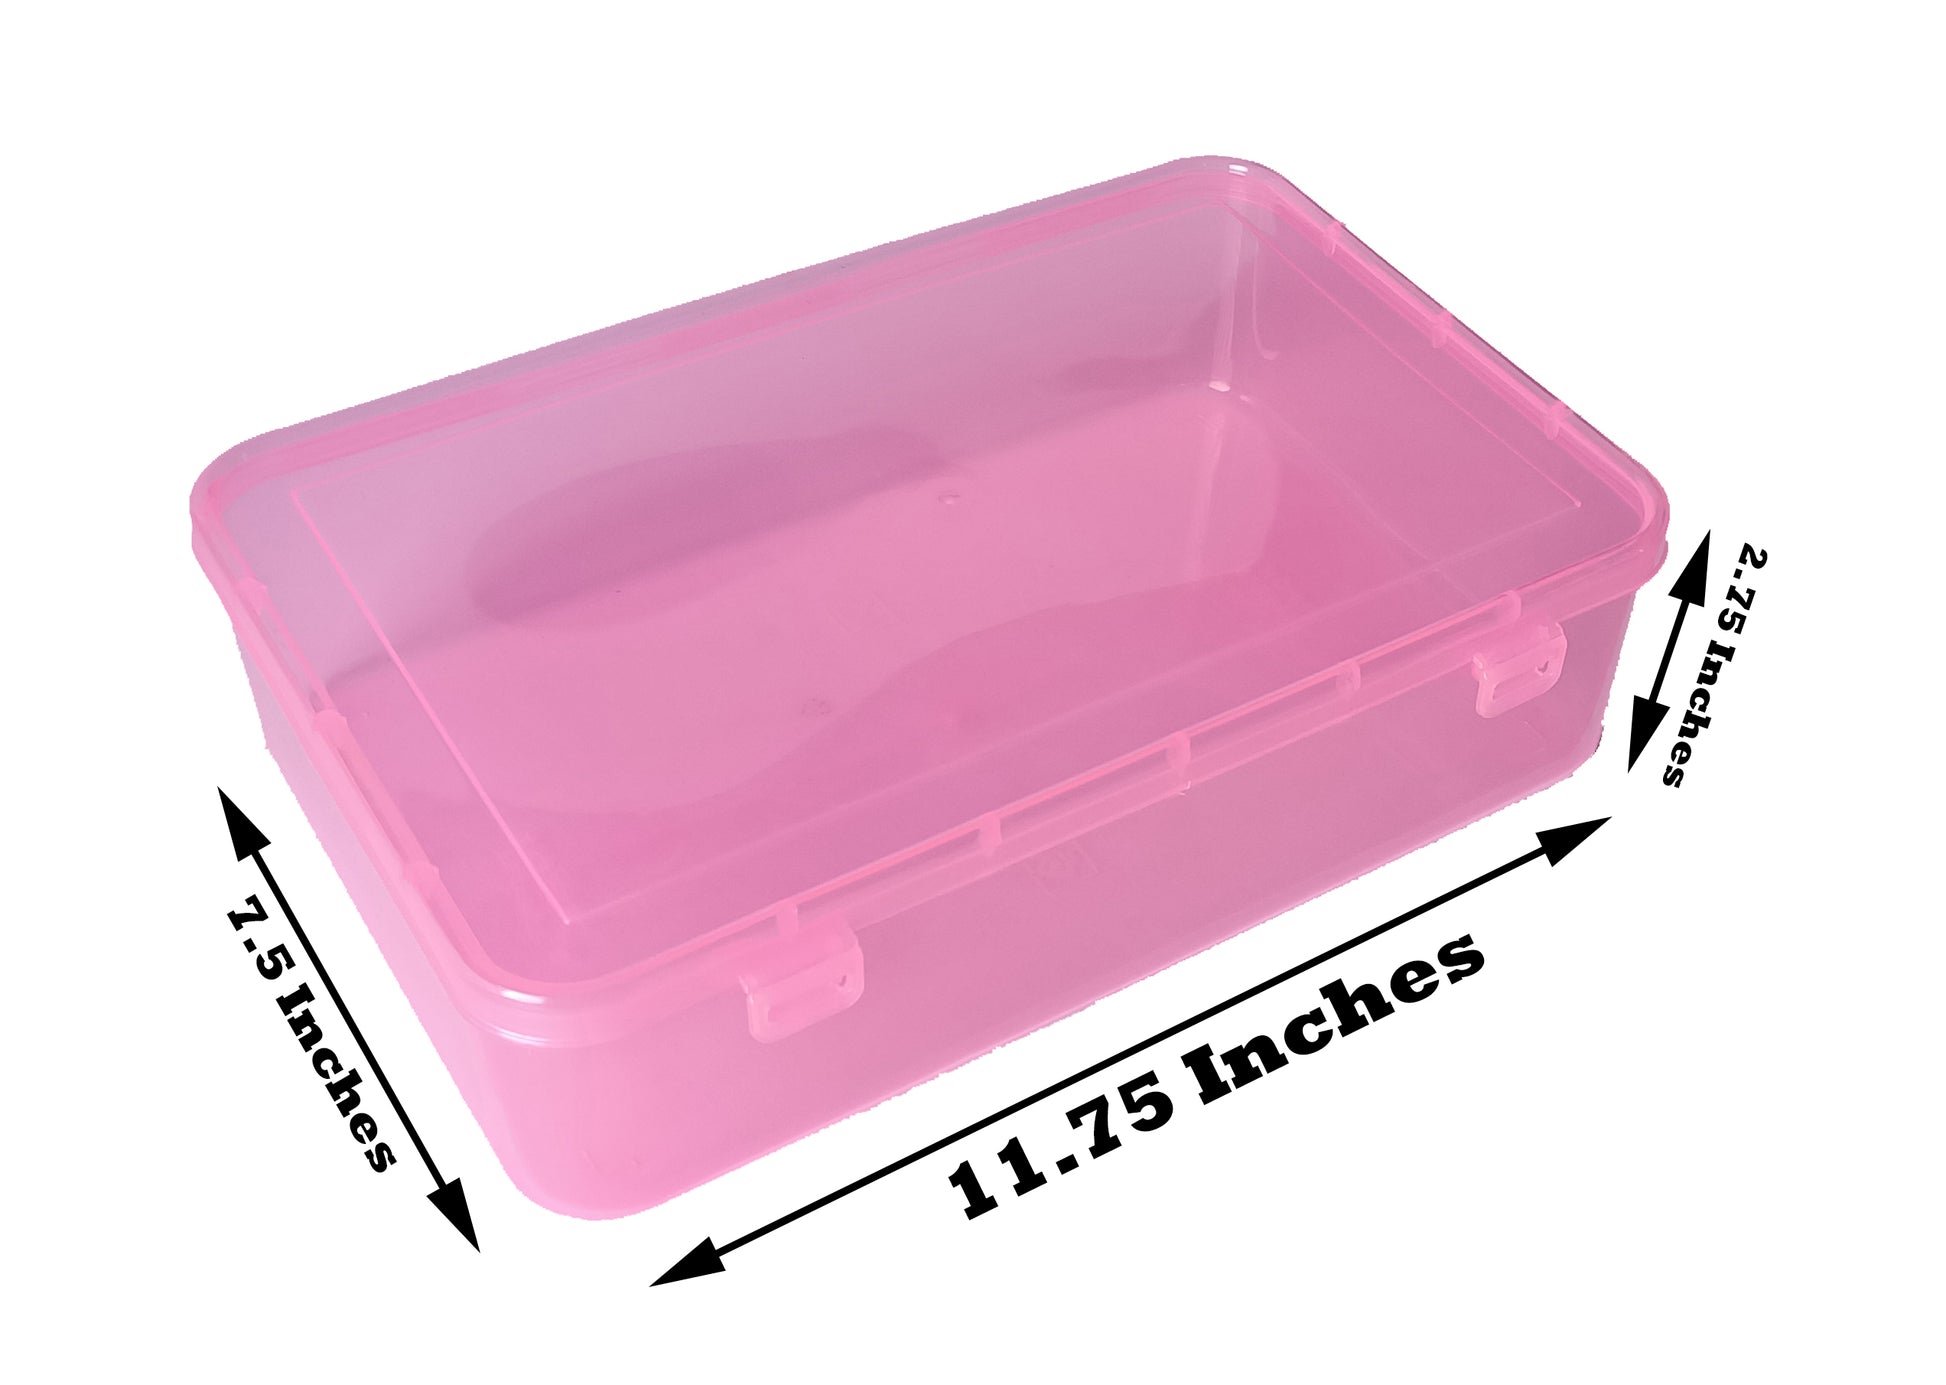 Big Plastic Storage Boxes Pink Colour showing zise